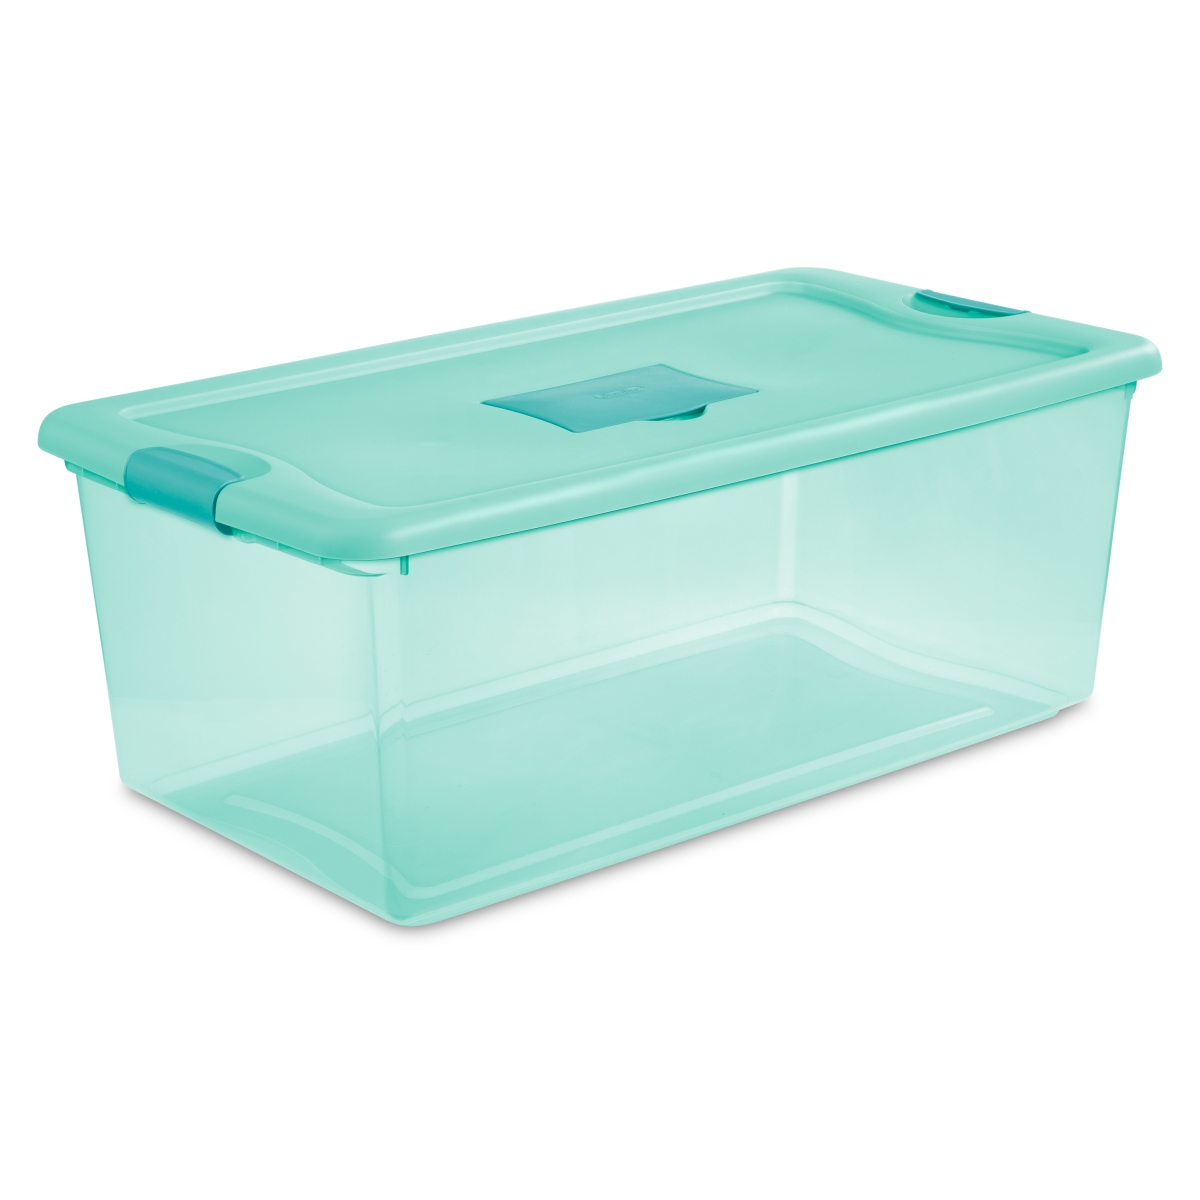 Sterilite 254190 106 Qt. Fresh Box - Aqua